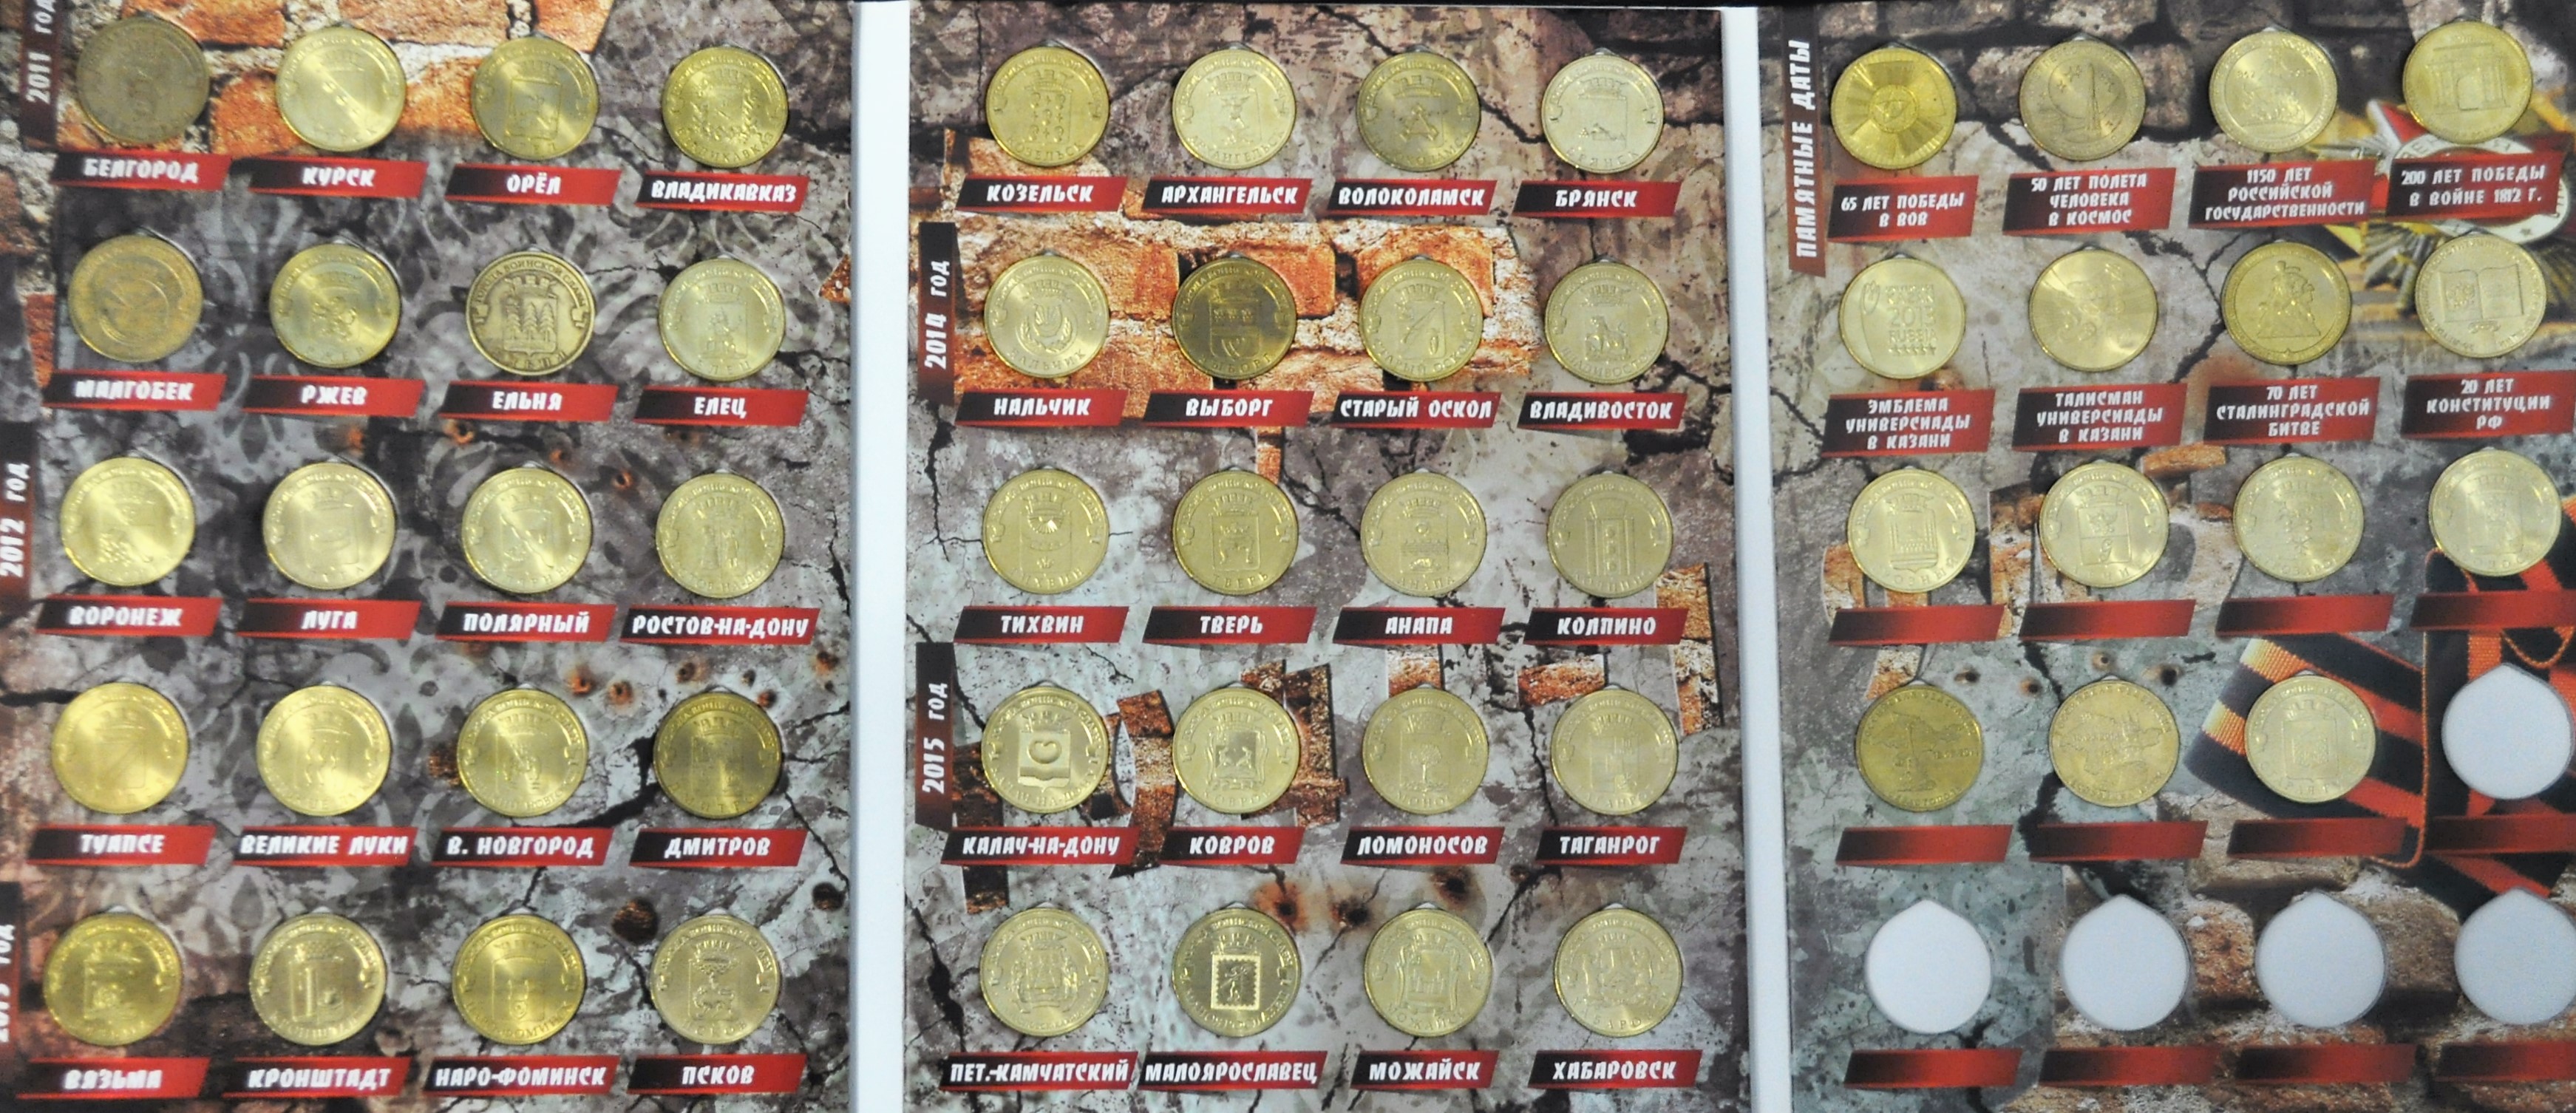 Набор монет "Города воинской славы" и другие 10 рублёвые монеты